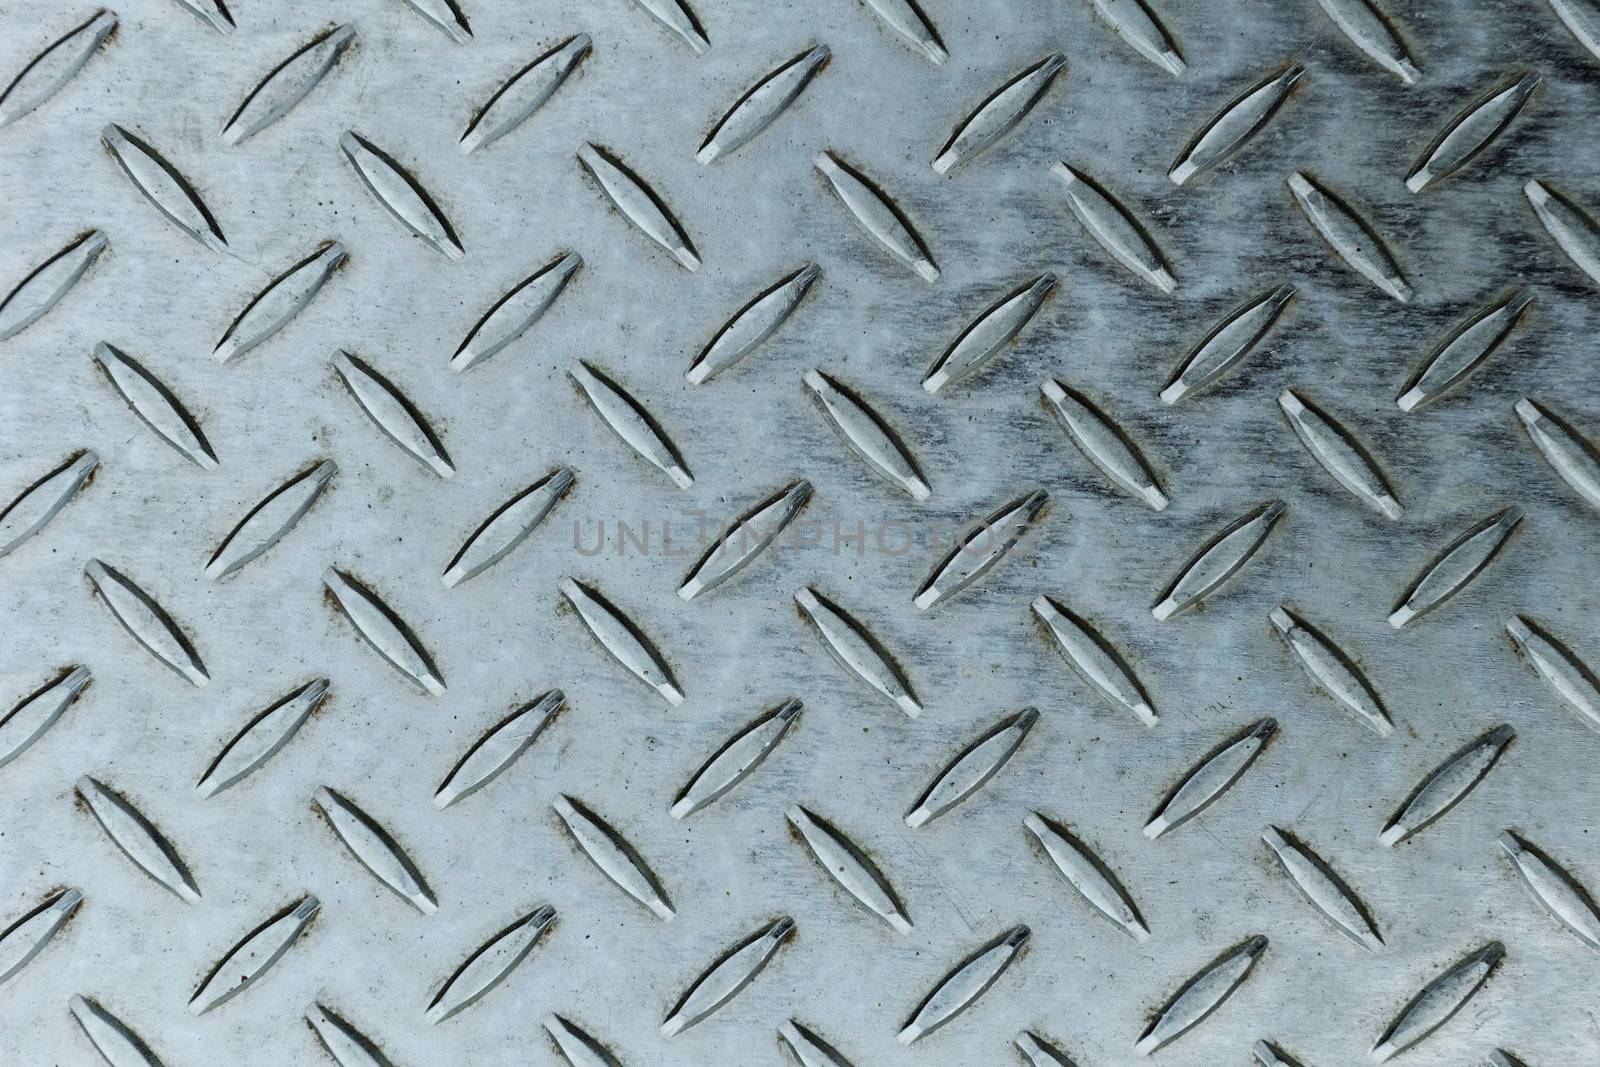 Seamless steel diamond plate texture